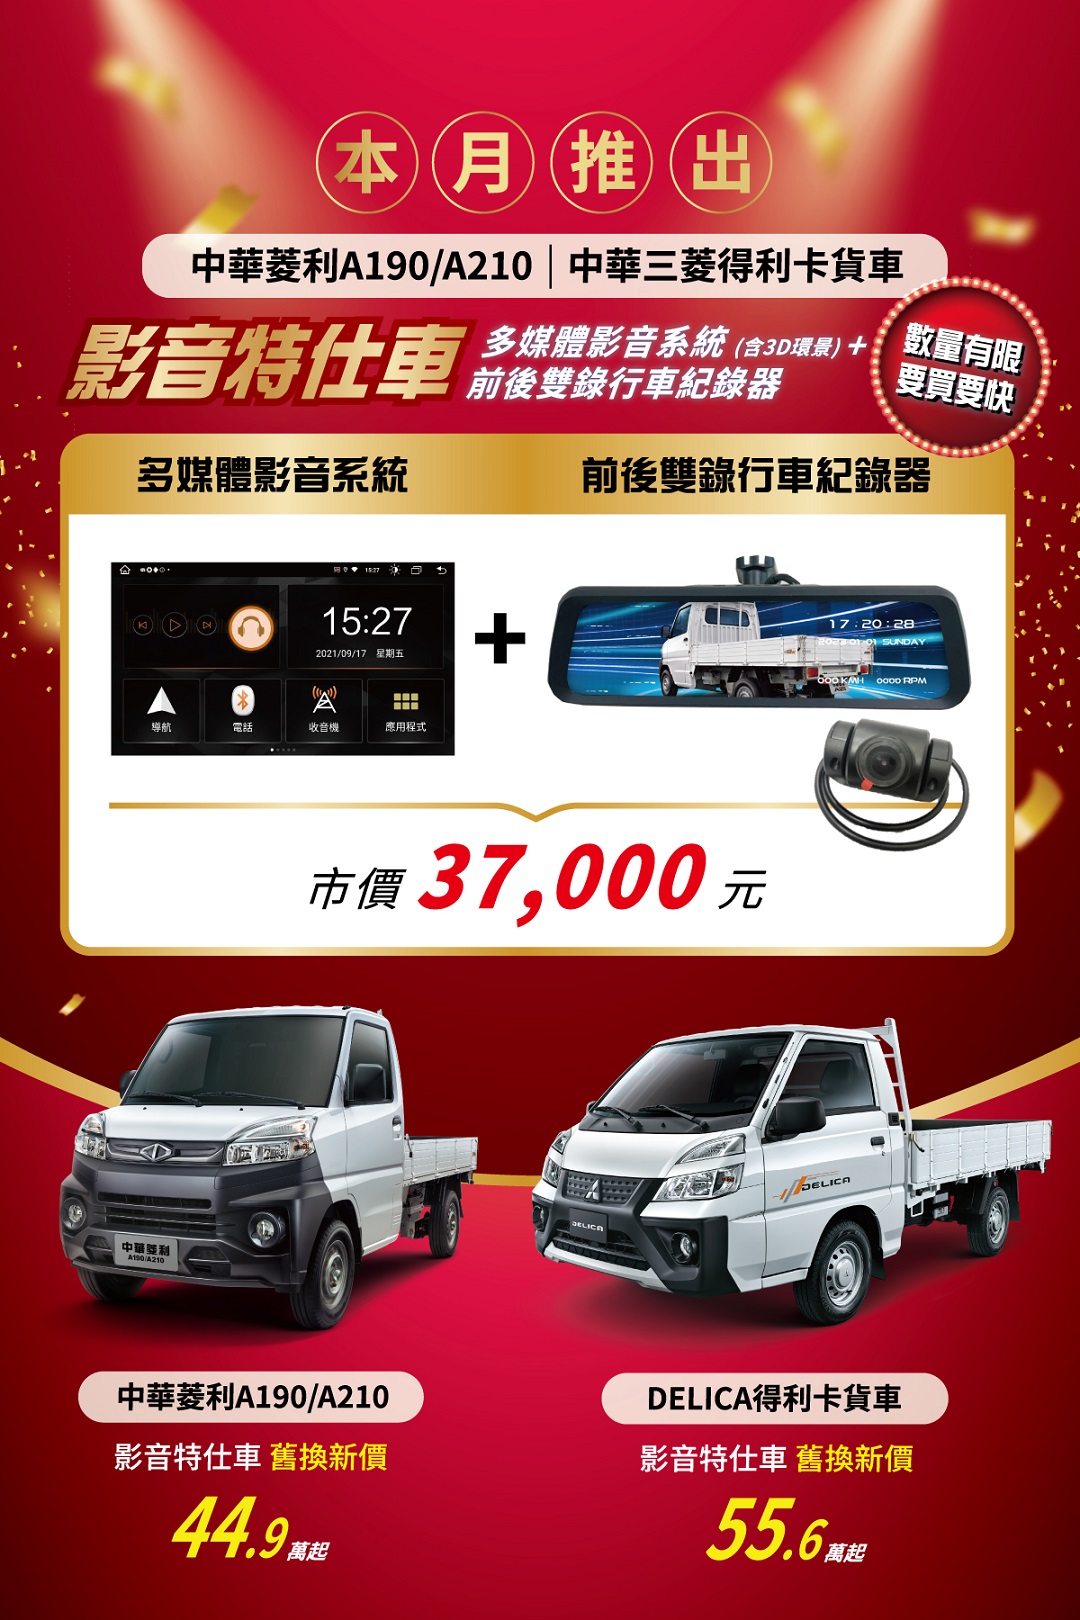 中華菱利A190A210及三菱得利卡貨車本月推影音特仕車.jpg